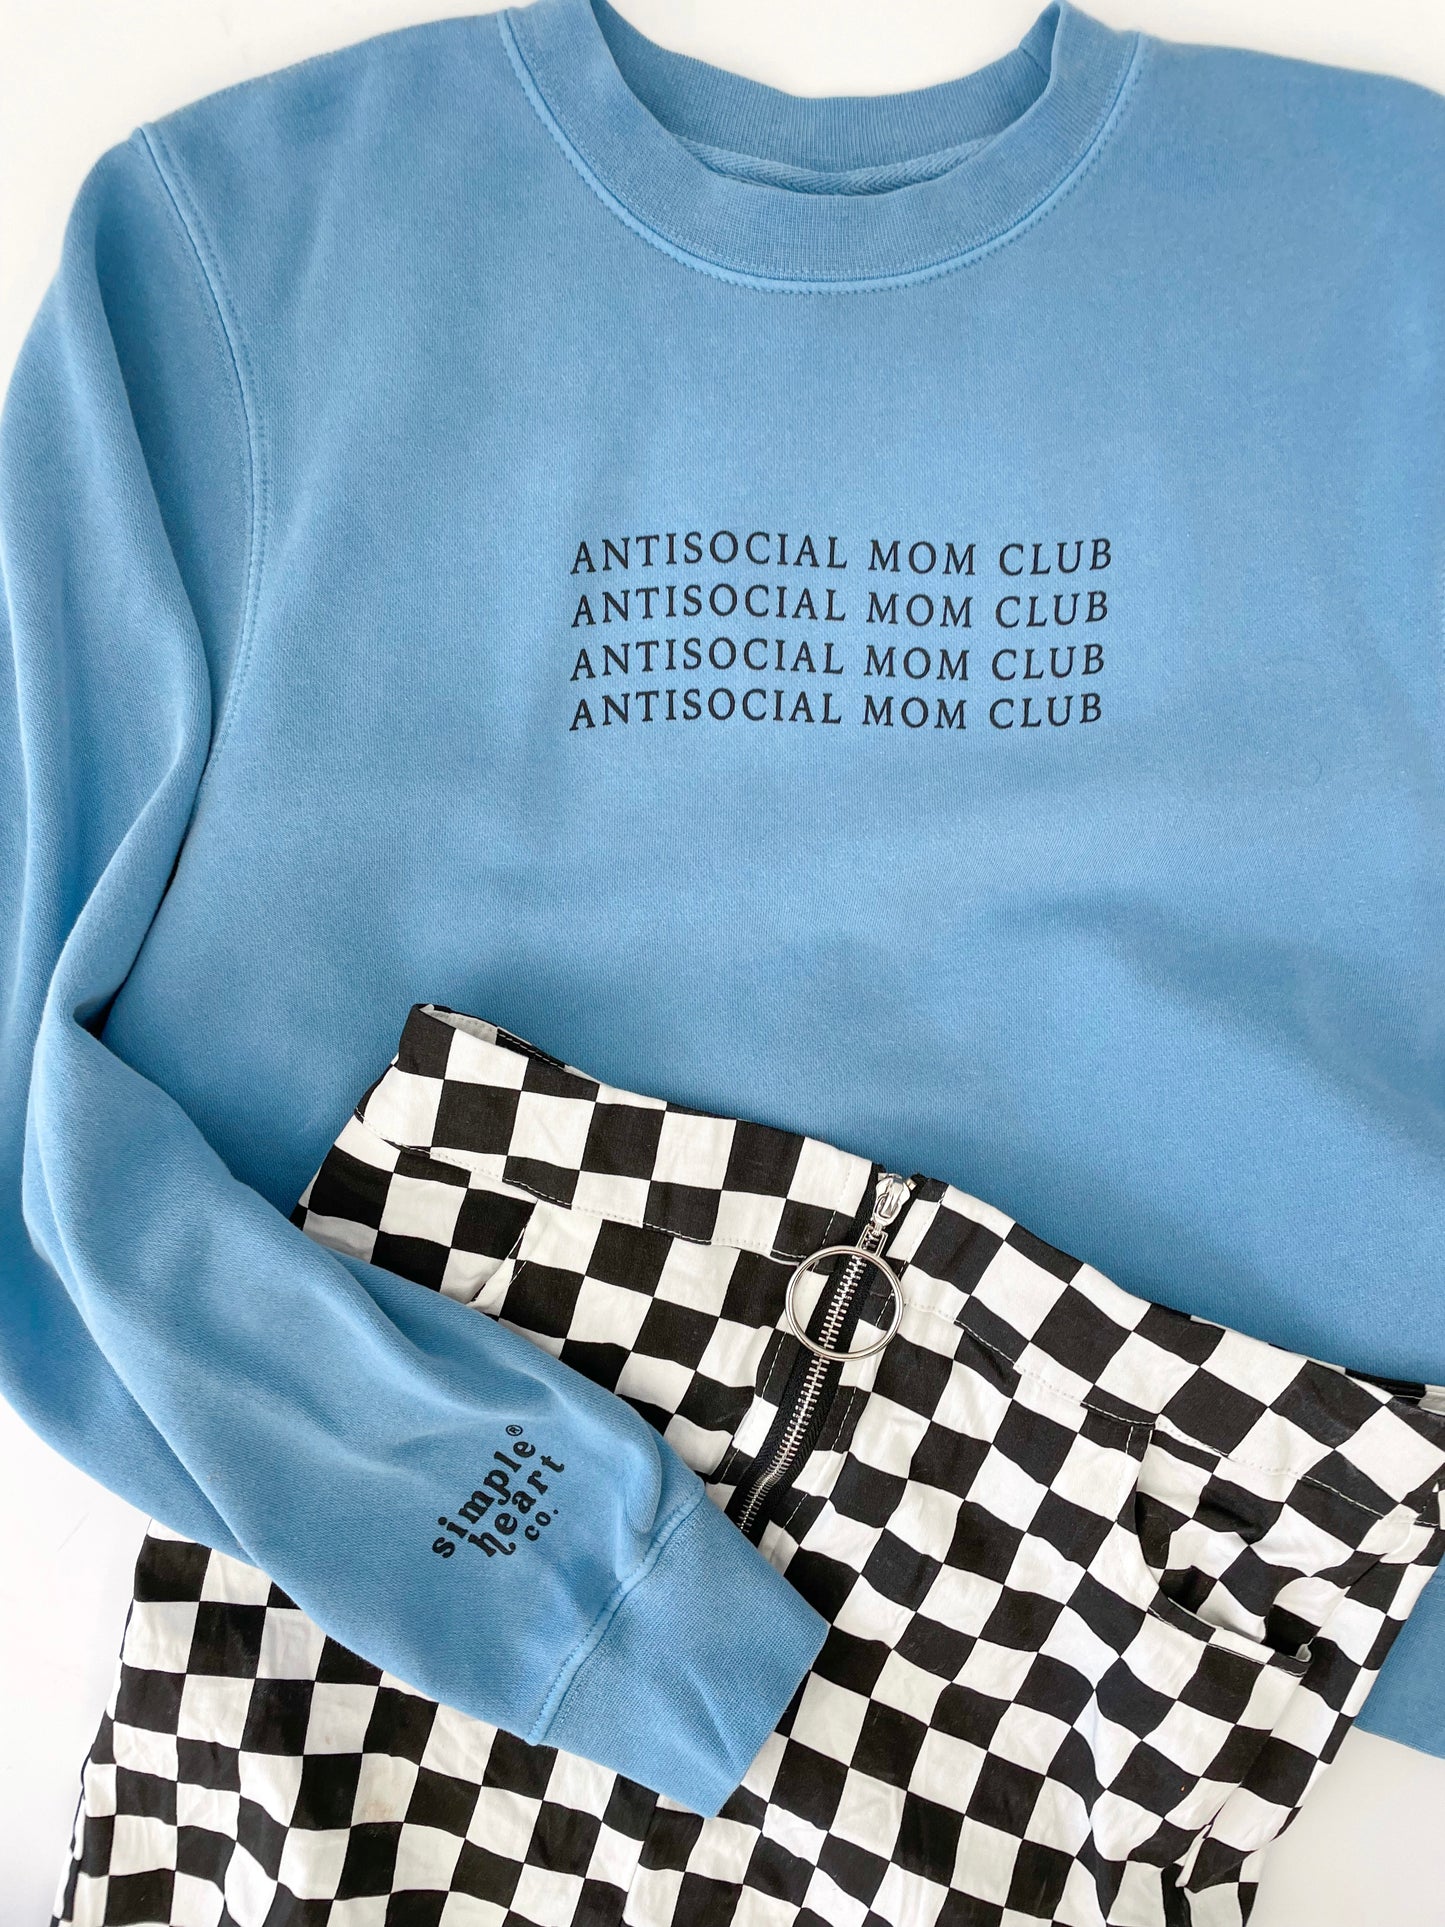 antisocial mom club blue sweatshirt